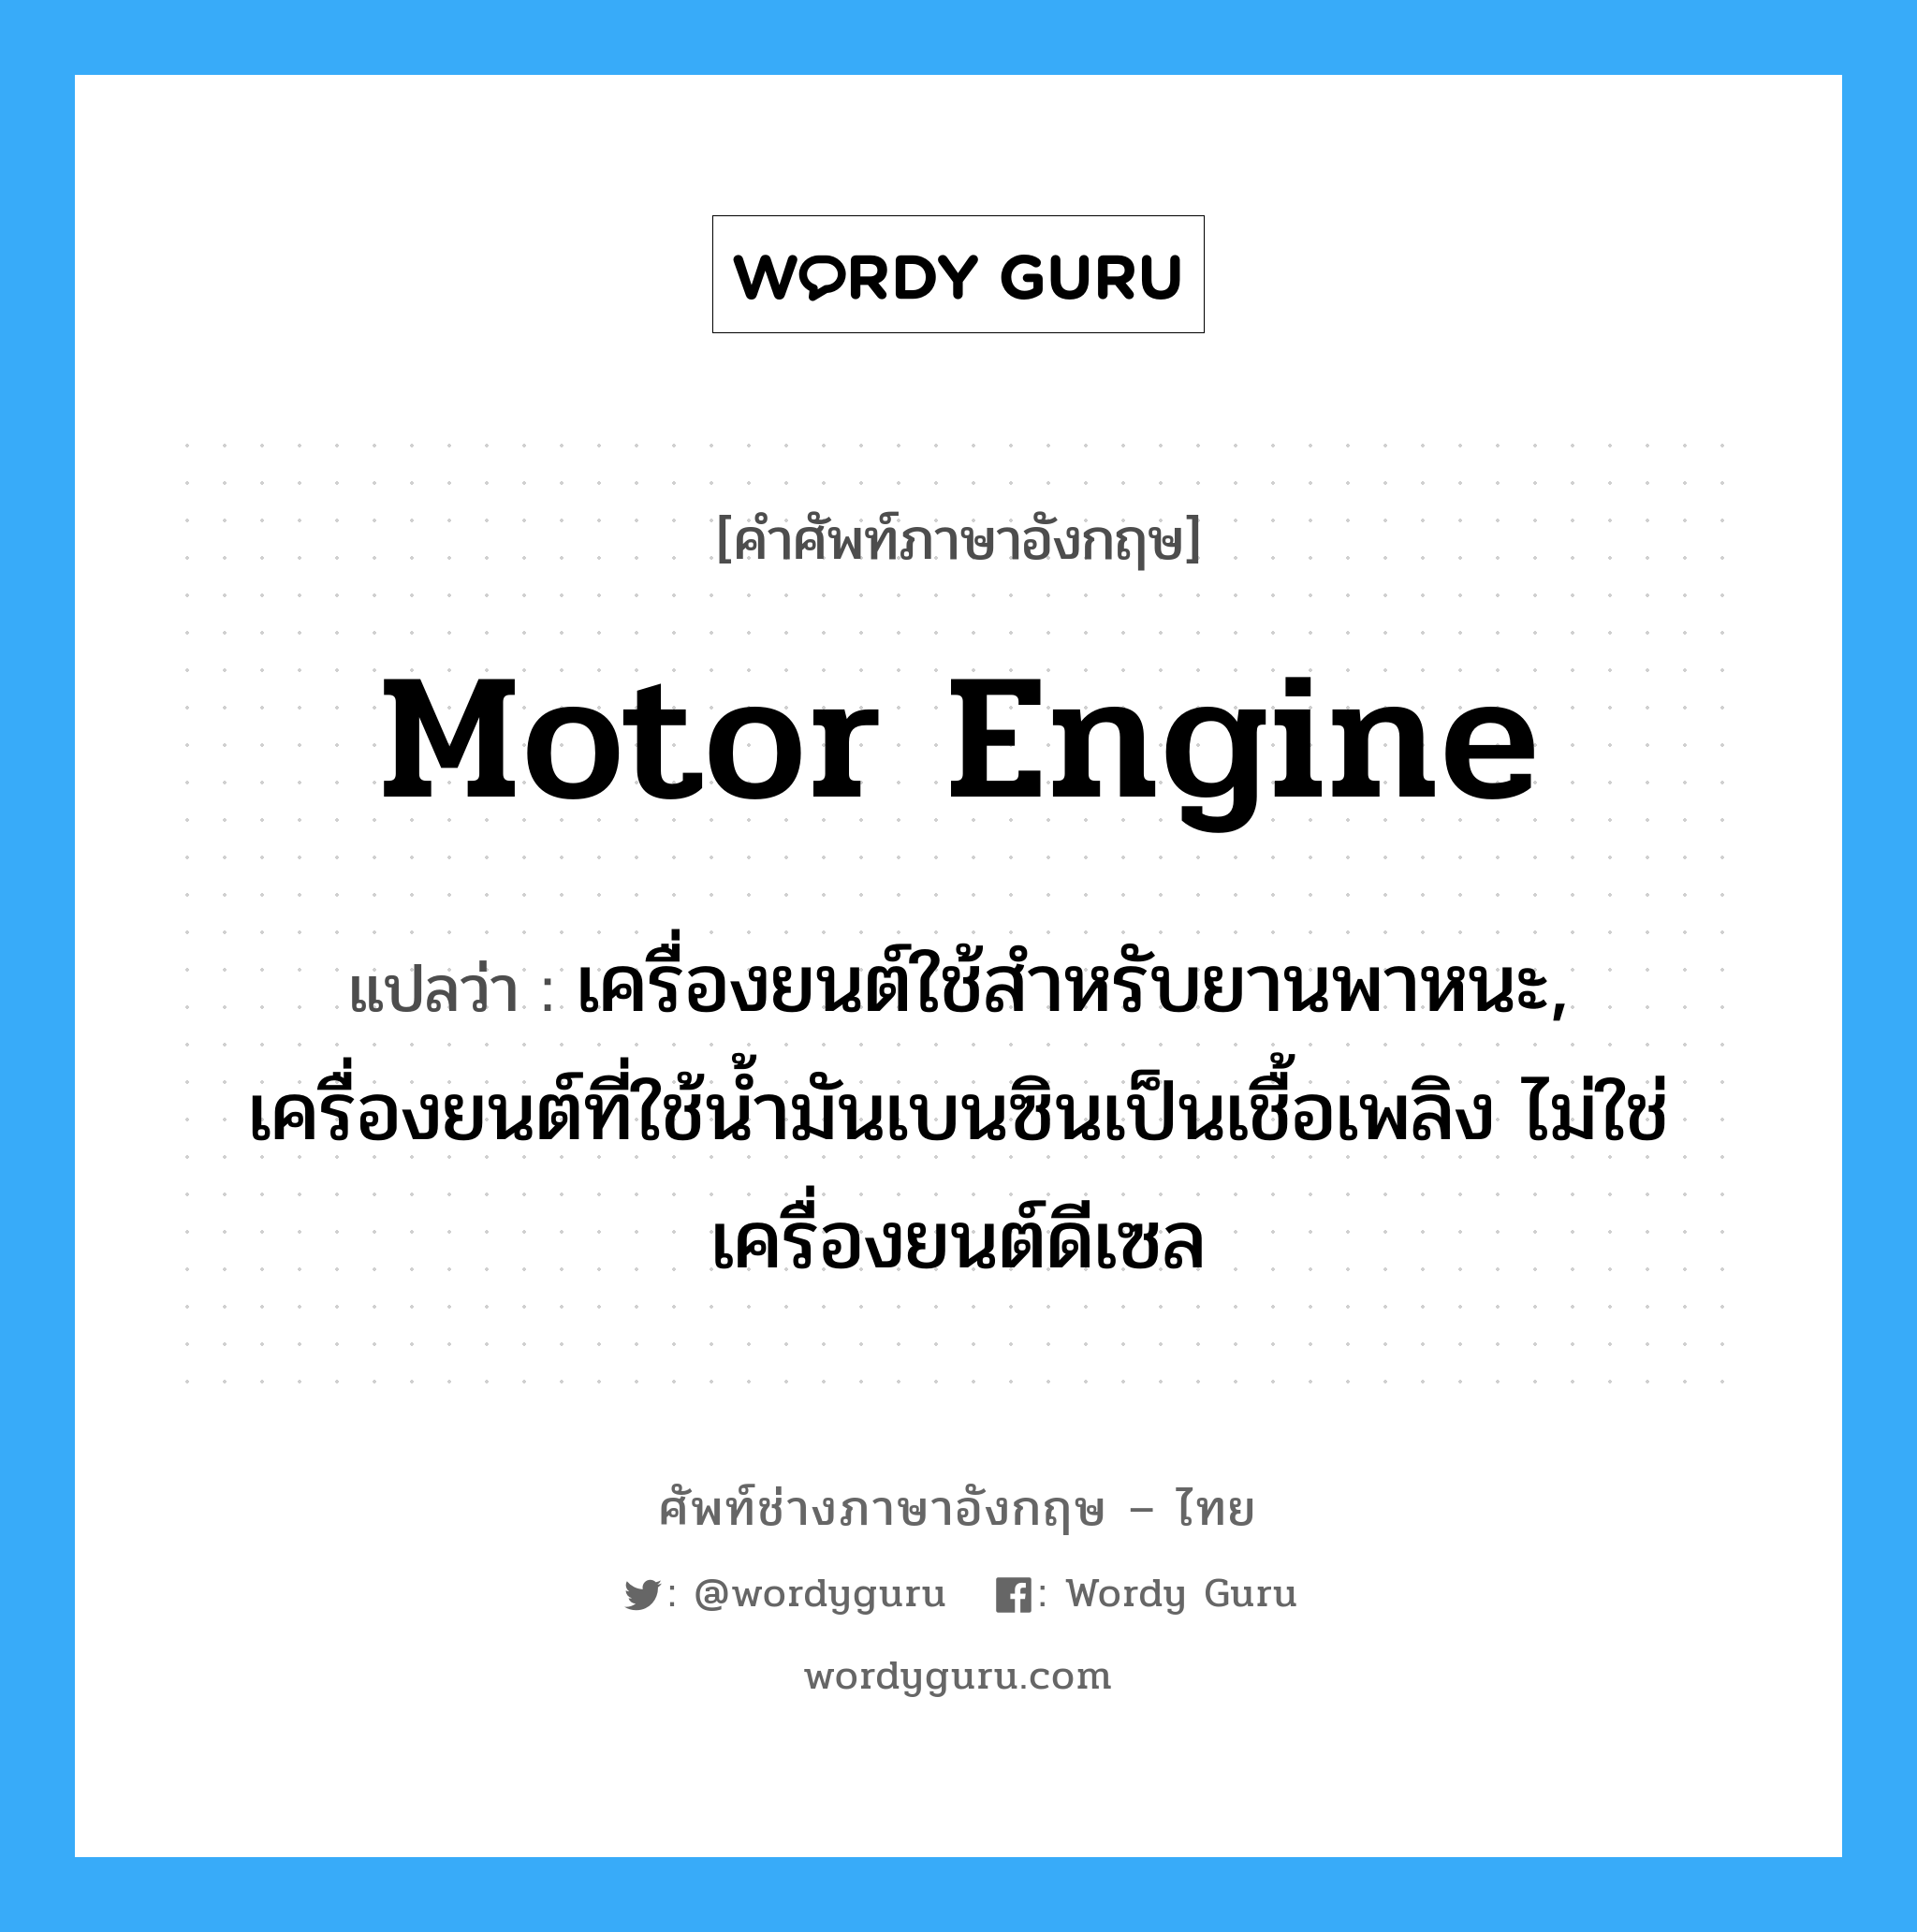 motor engine แปลว่า?, คำศัพท์ช่างภาษาอังกฤษ - ไทย motor engine คำศัพท์ภาษาอังกฤษ motor engine แปลว่า เครื่องยนต์ใช้สำหรับยานพาหนะ, เครื่องยนต์ที่ใช้น้ำมันเบนซินเป็นเชื้อเพลิง ไม่ใช่เครื่องยนต์ดีเซล